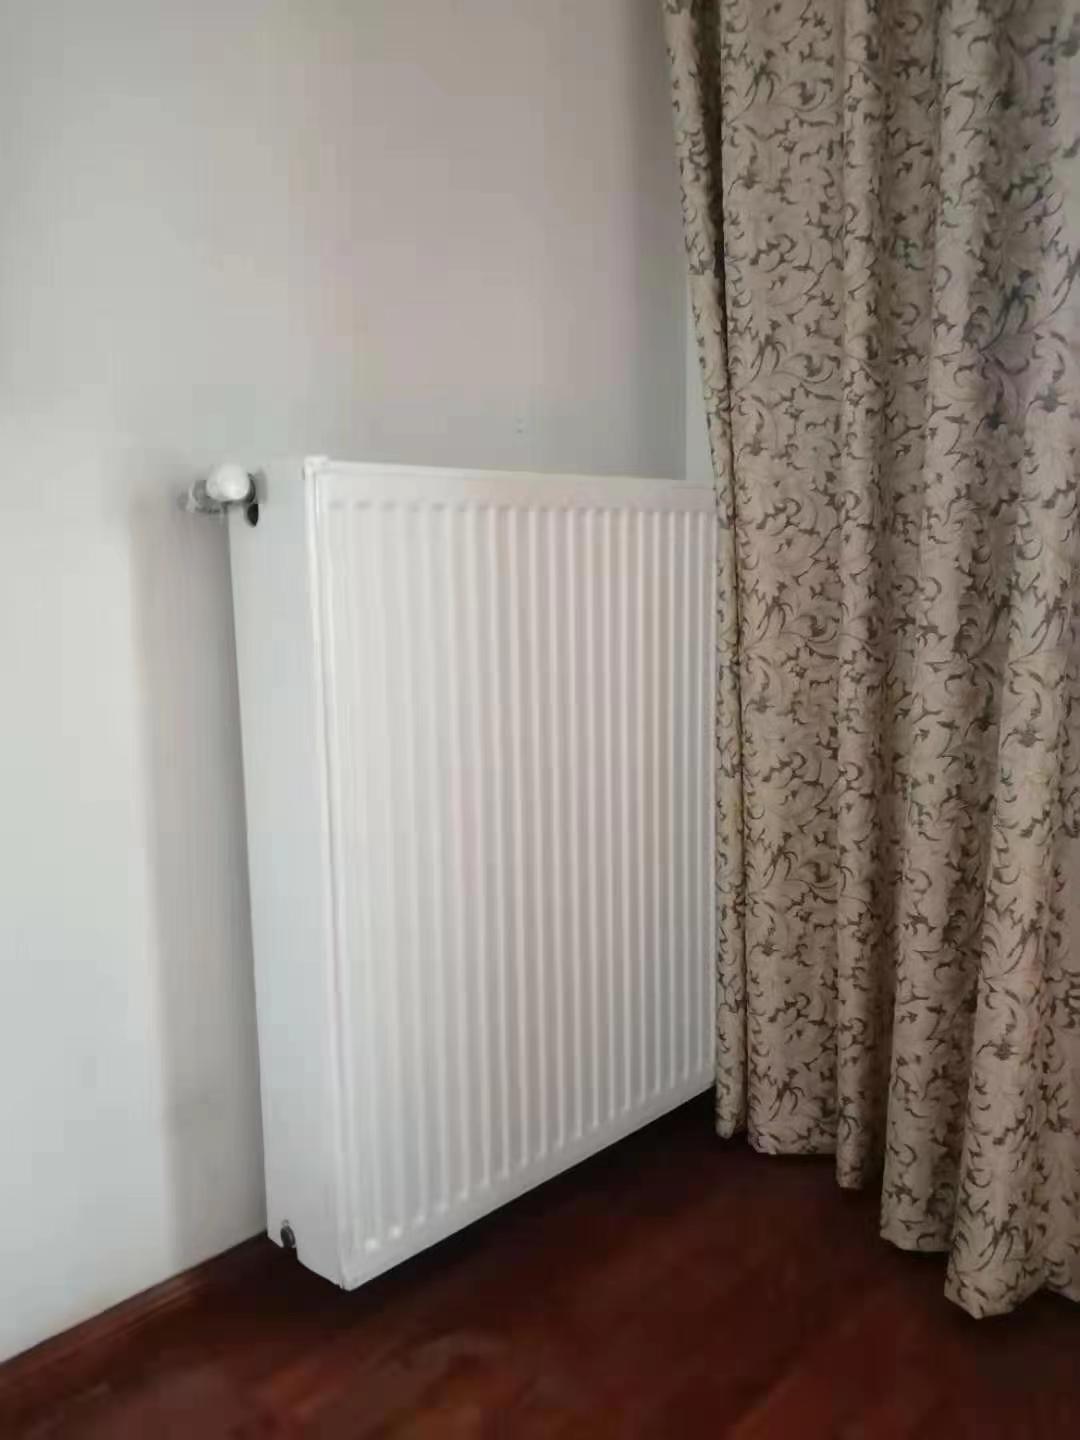 已装修好的房子如何安装暖气片